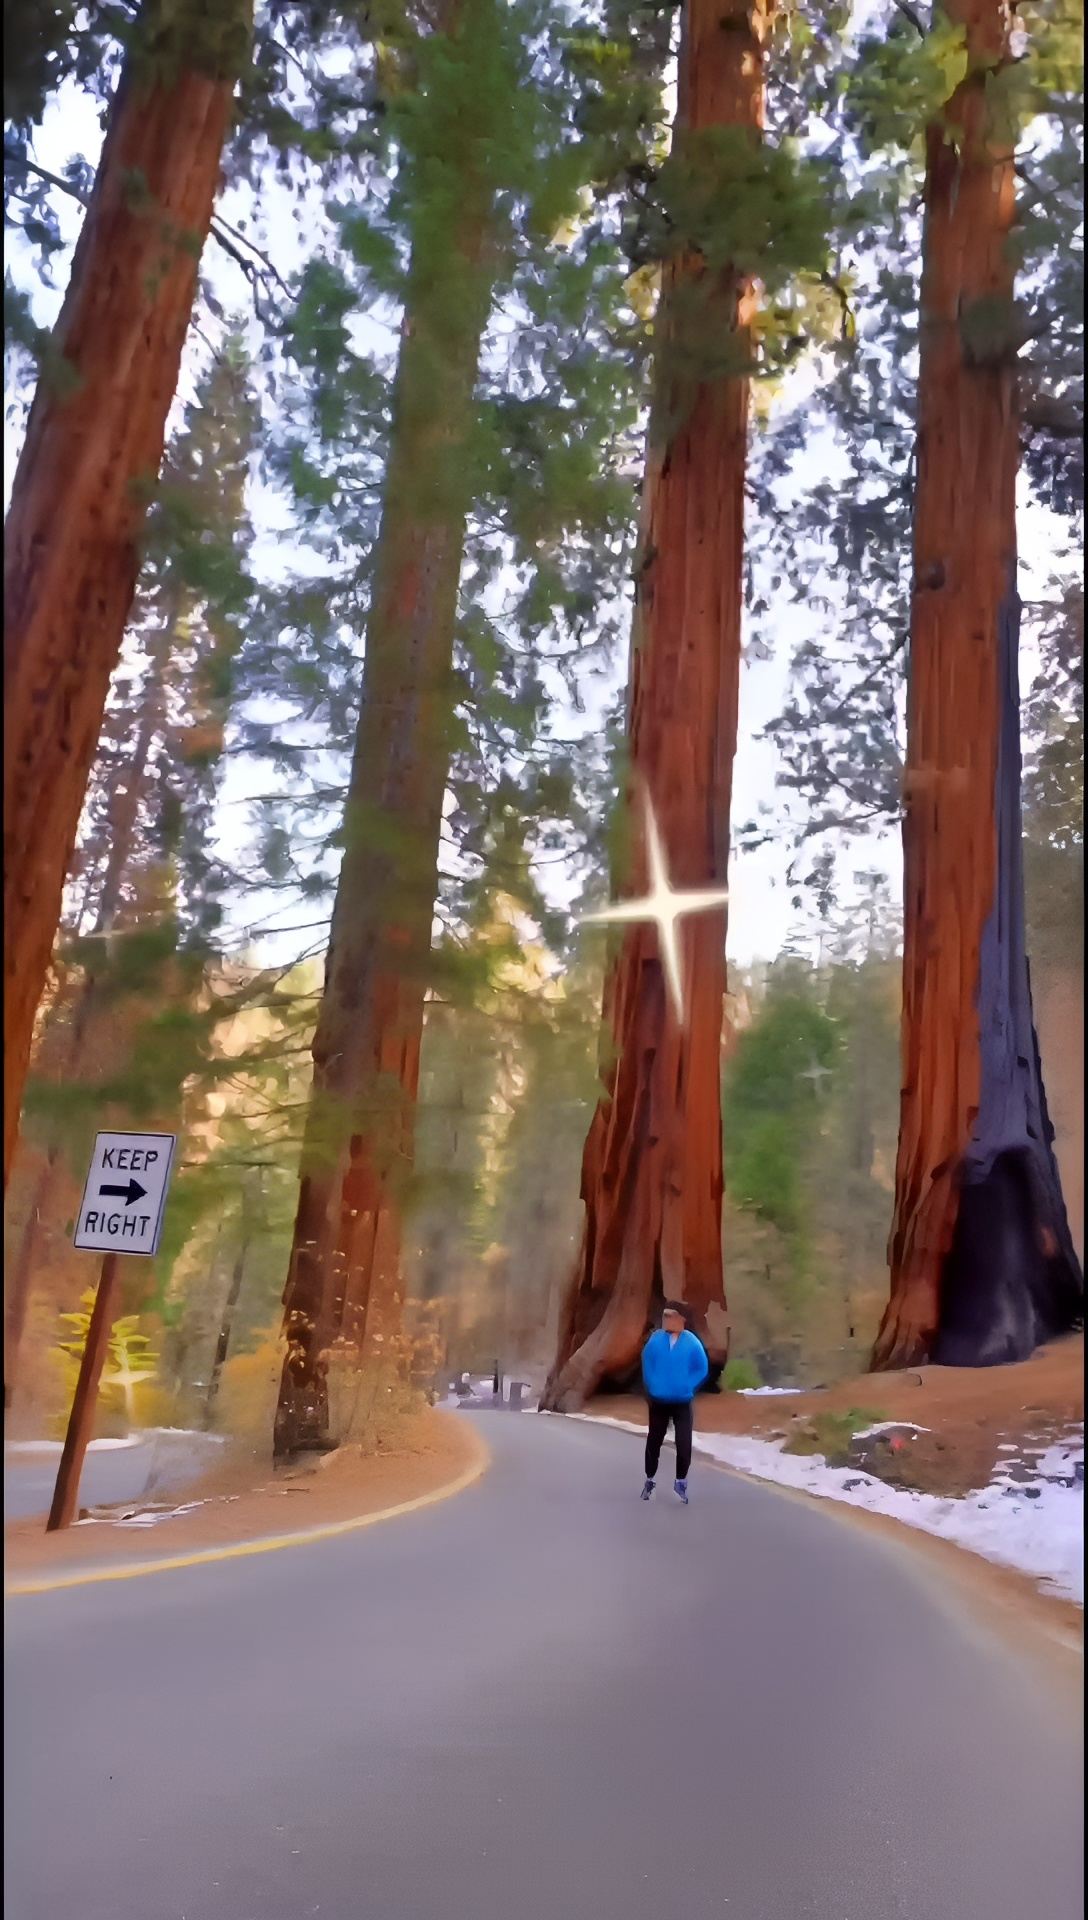 红杉树国家公园∫Sequoia National Park 一直觉得红杉树国家公园只是一大片参天红杉